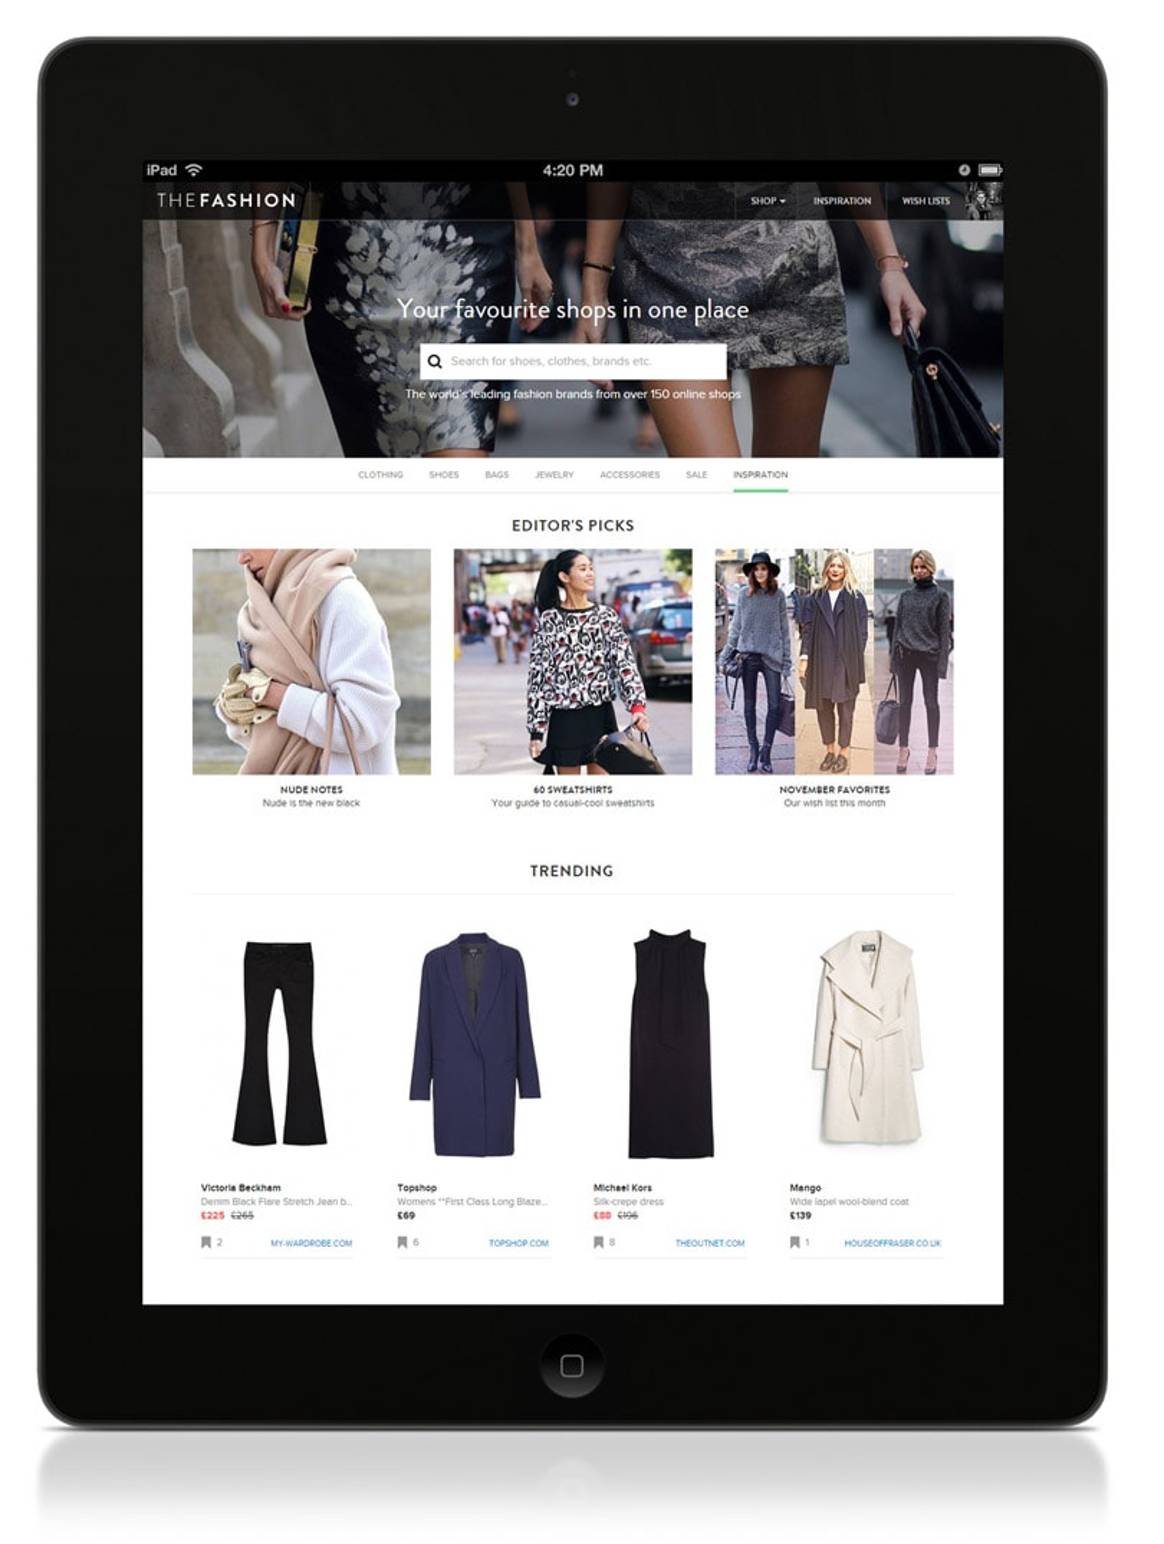 TheFashion.com aims to simplify online fashion shopping